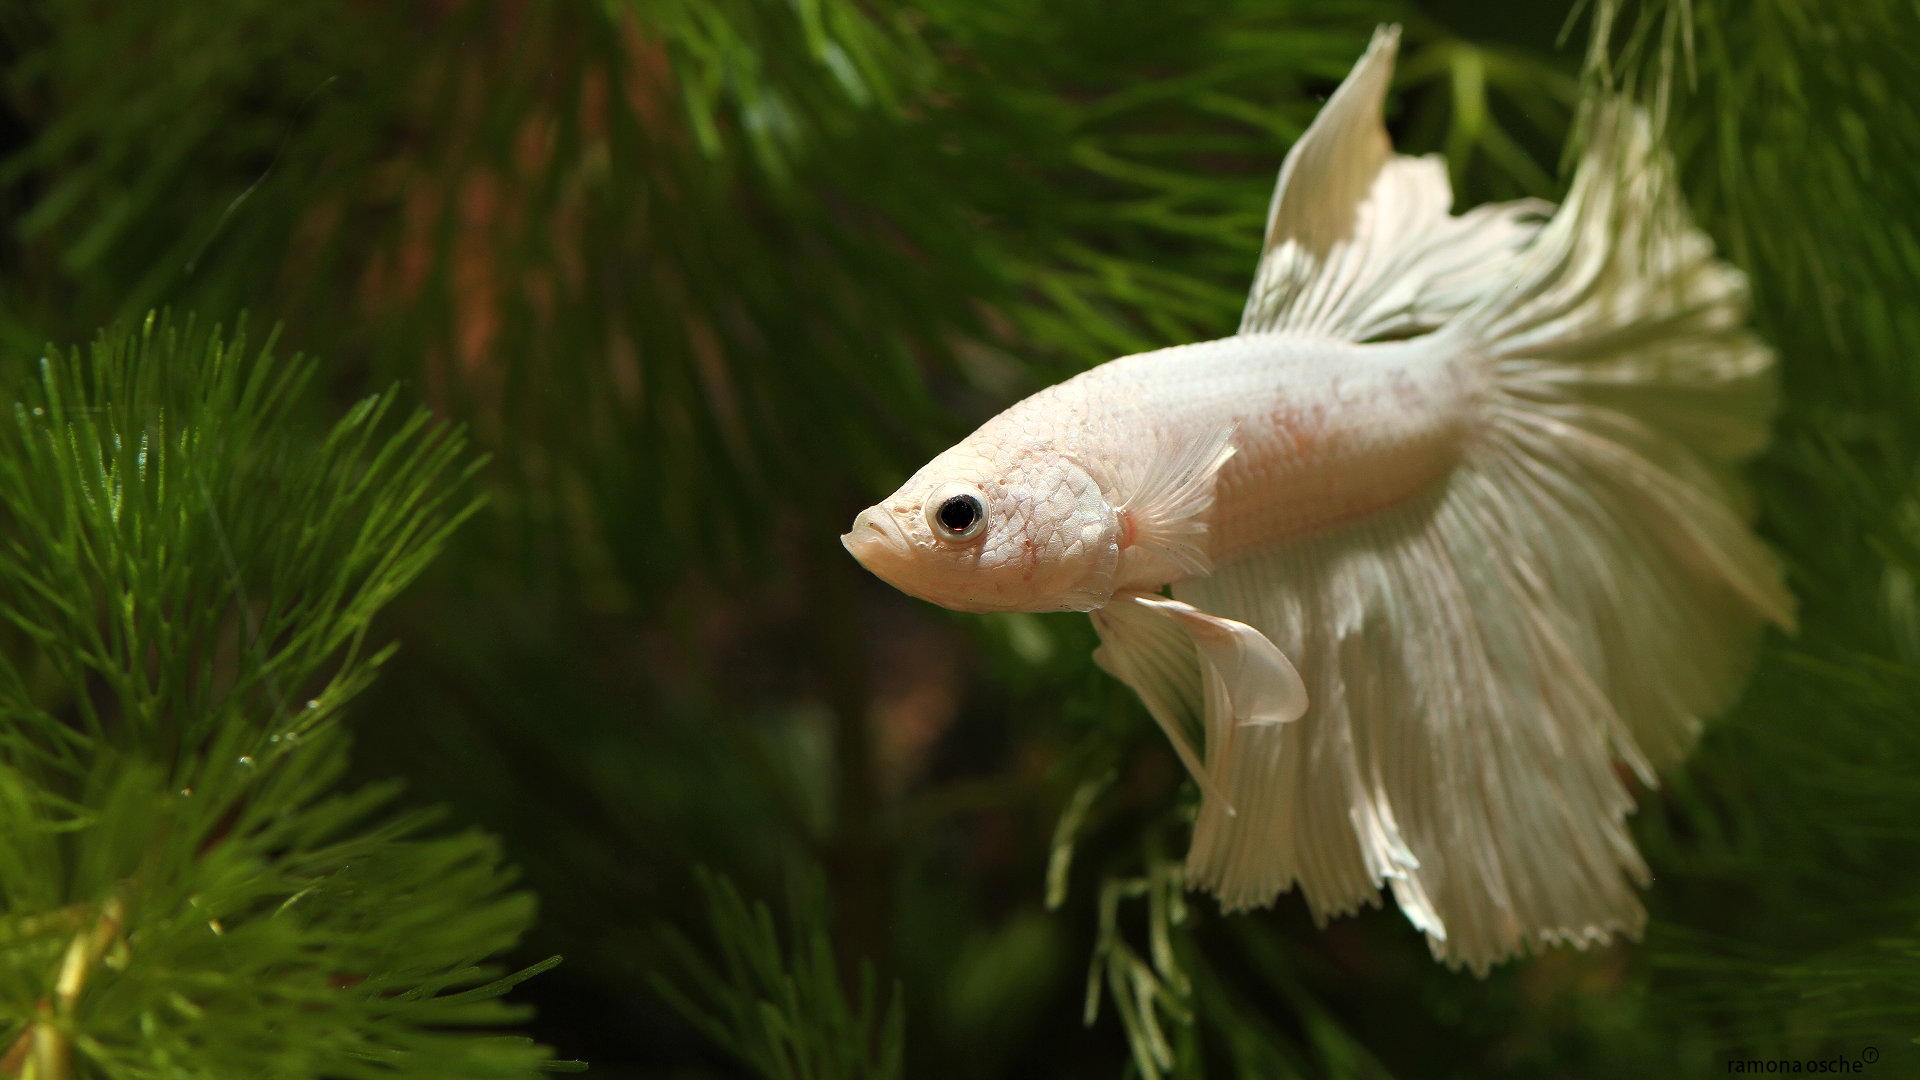 White Angel Siamese Betta Fish